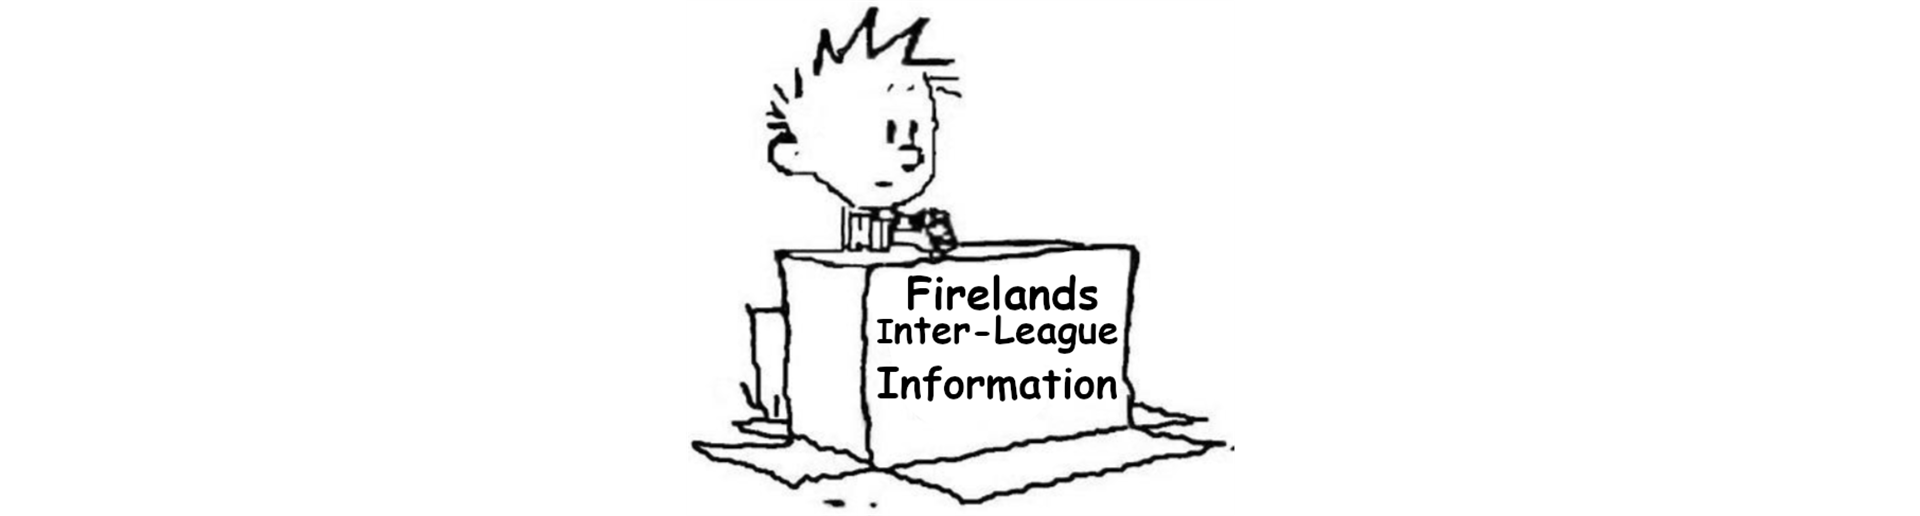 Firelands Inter-League Information